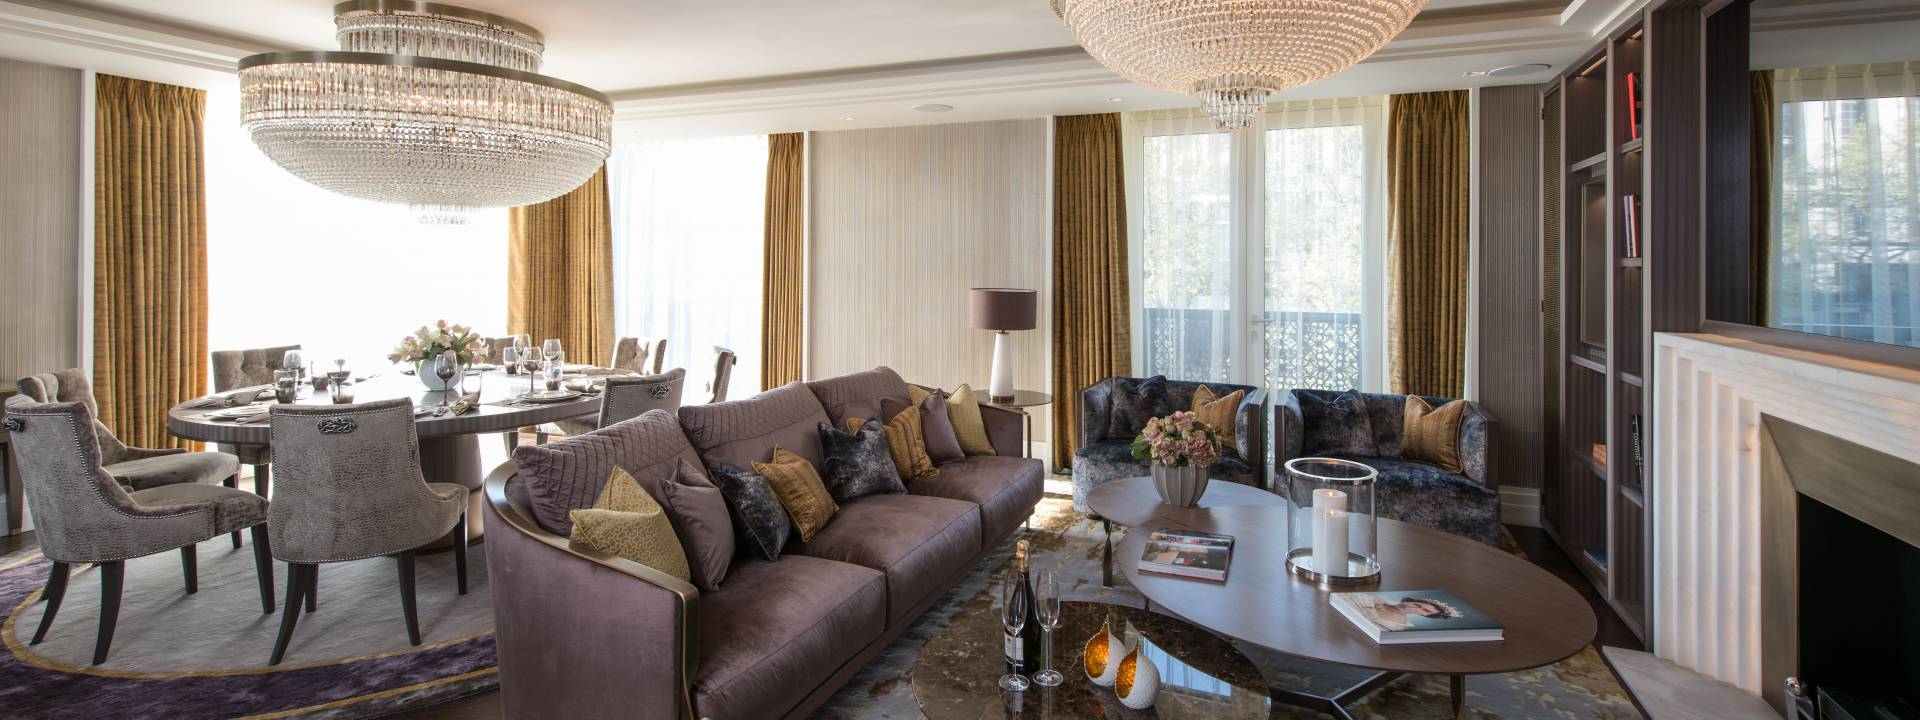 Modern Living Room designed by Yvette Taylor London 